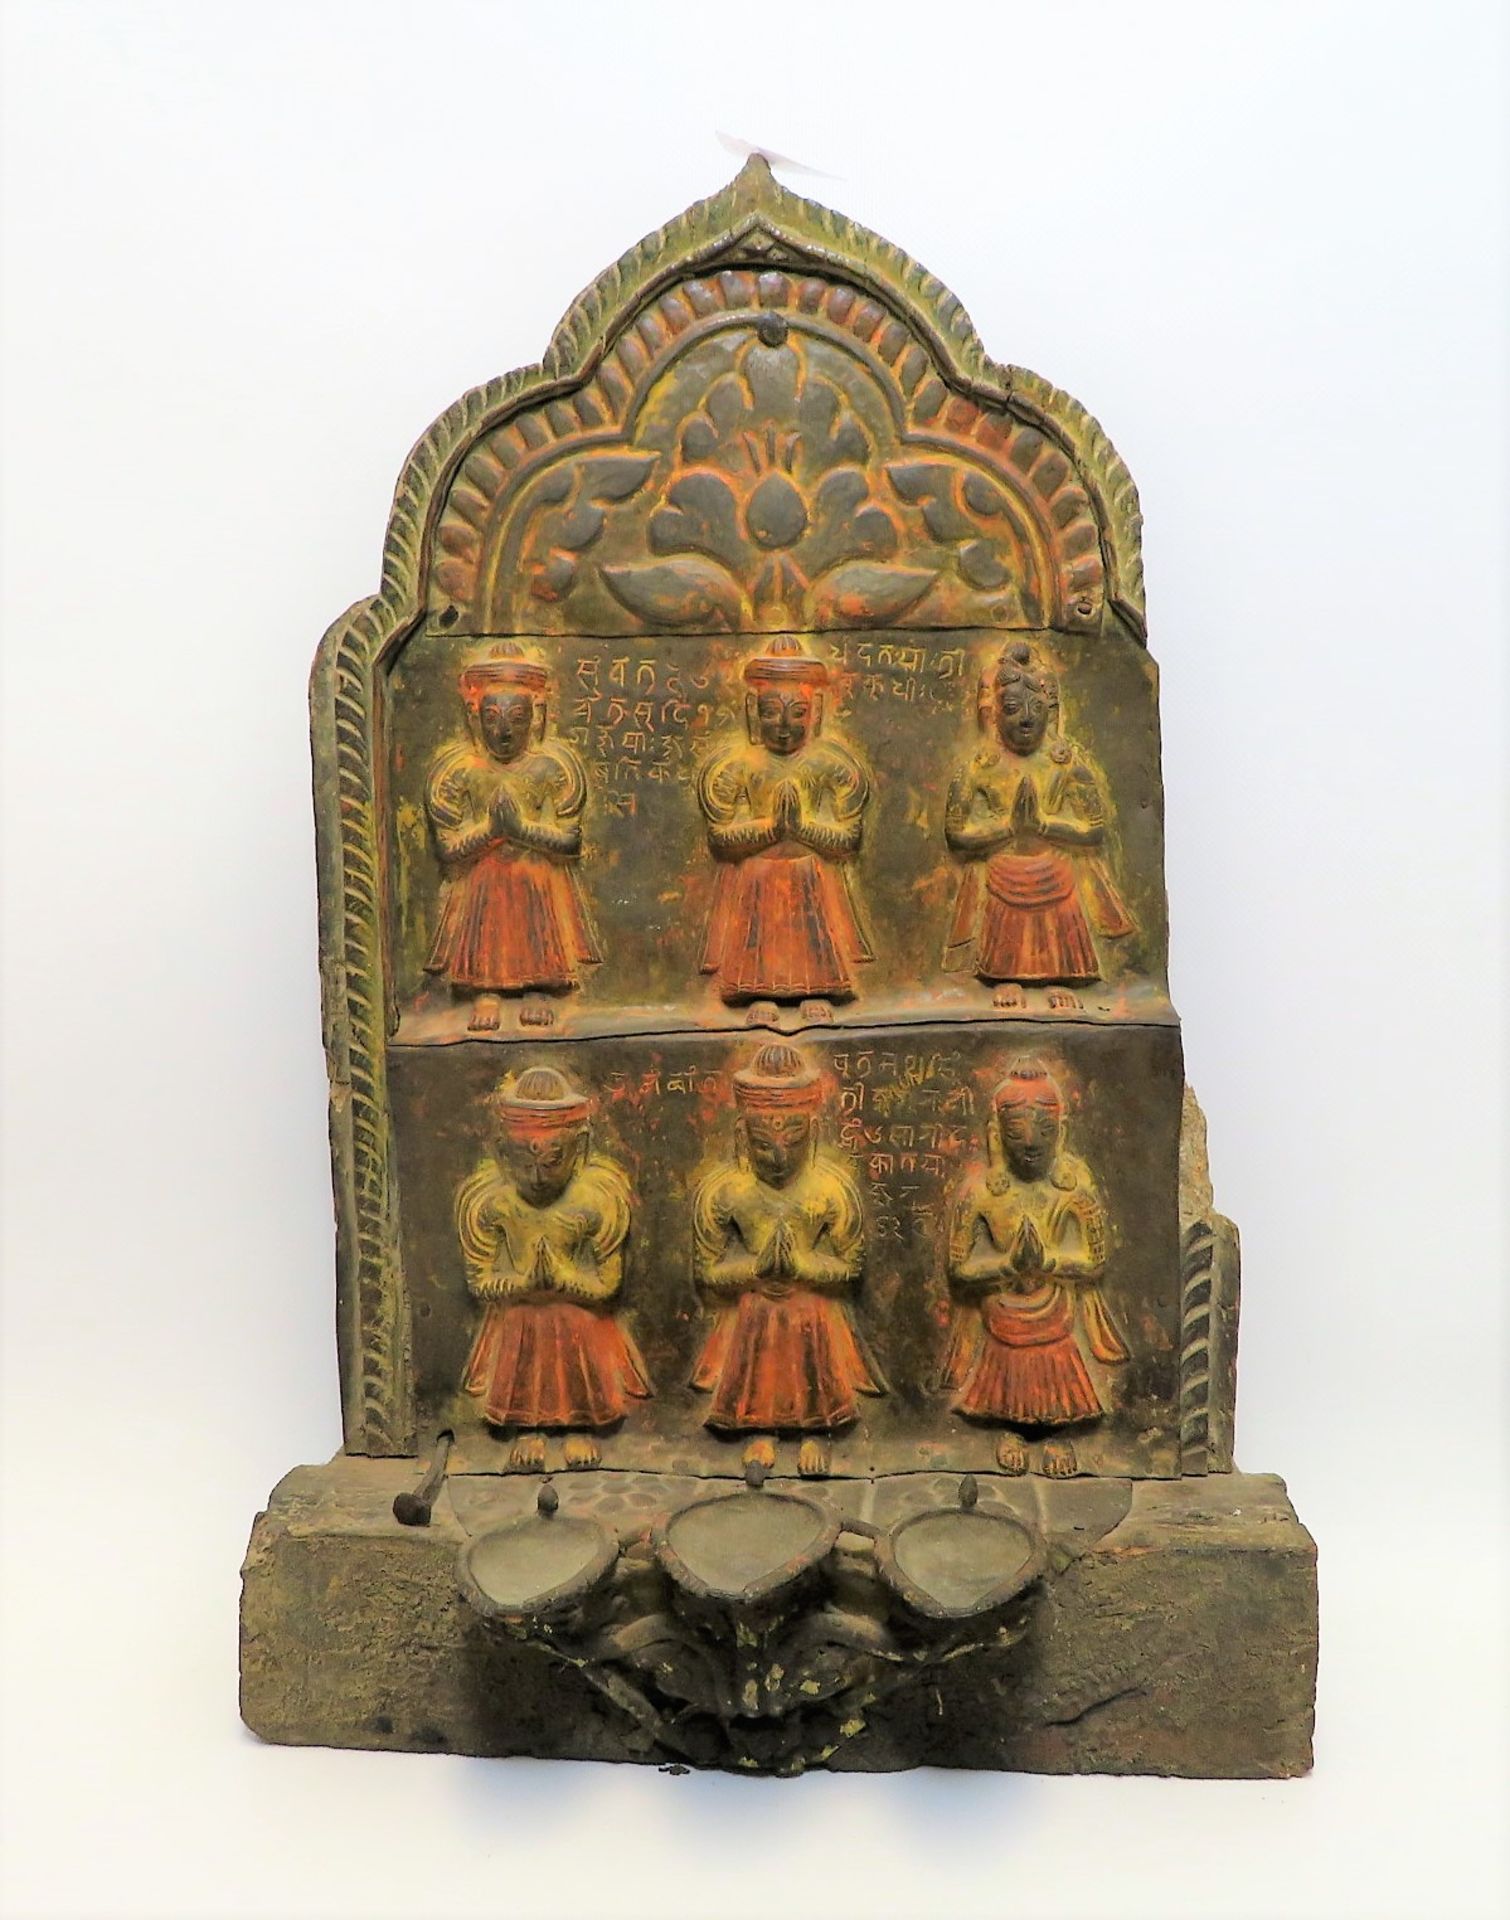 Wand-Öllampe, Indien, 18./19. Jahrhundert, Holz und Blech getrieben, Reste von